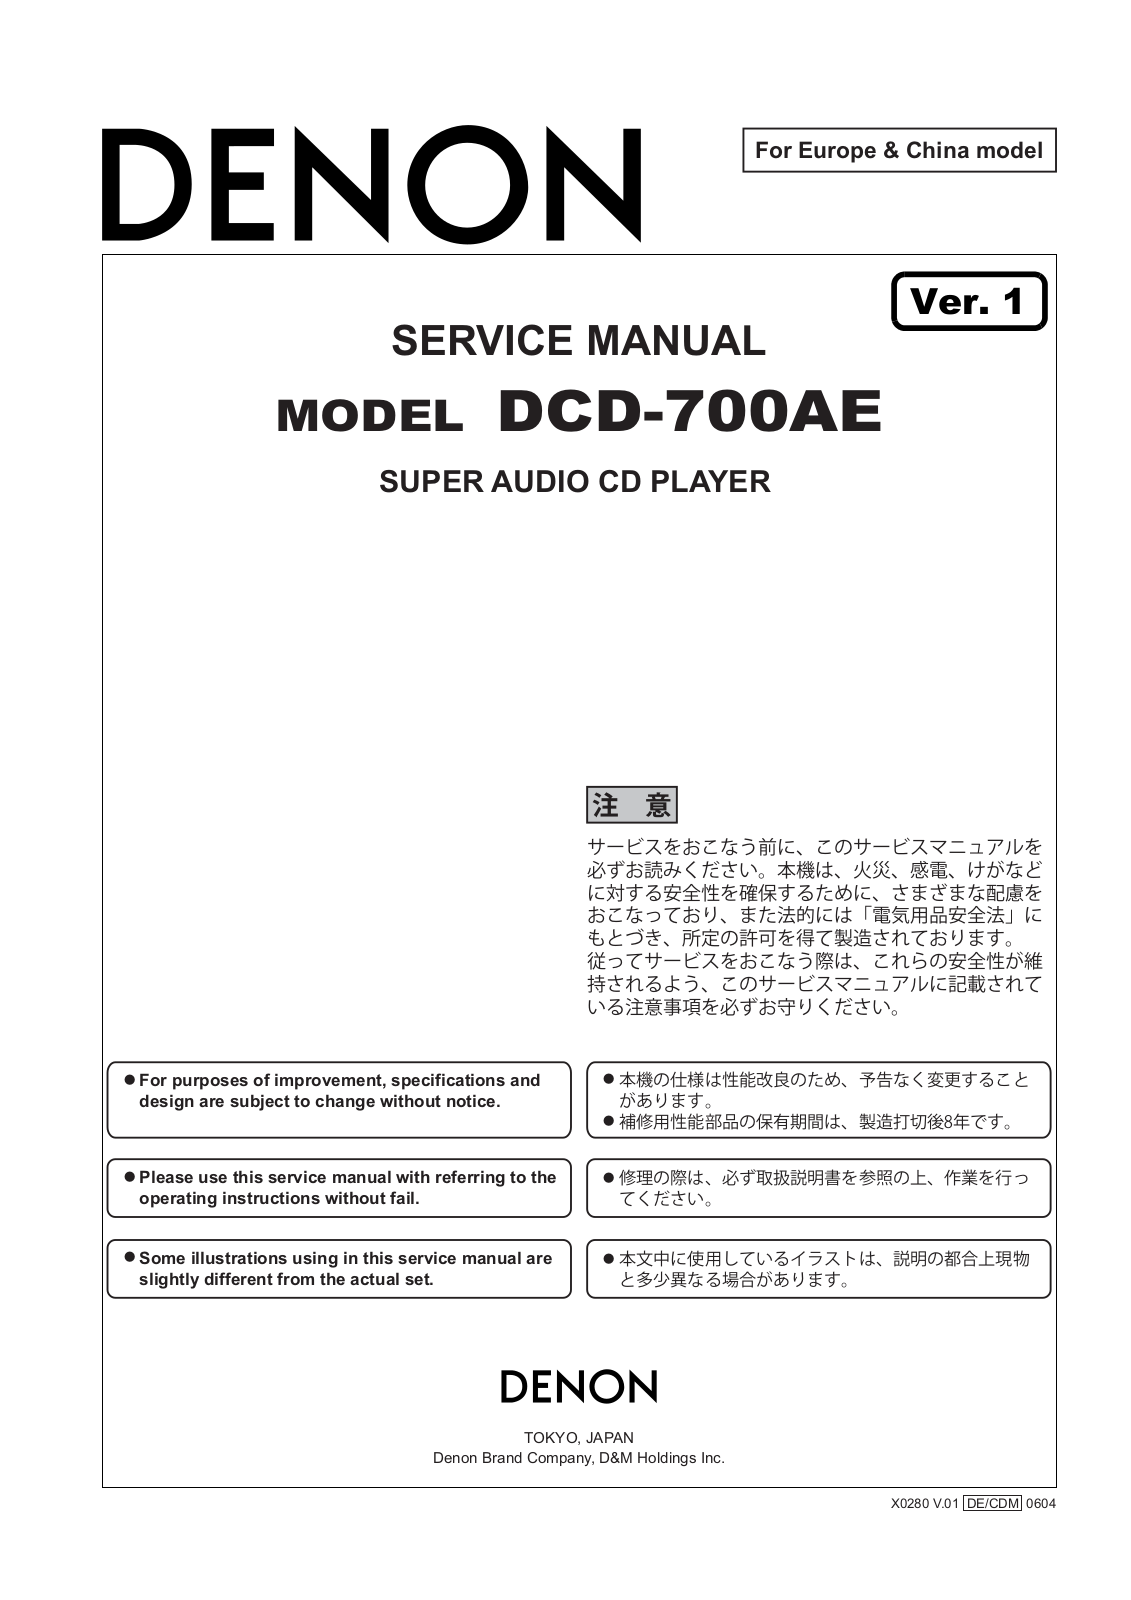 Denon DCD-700AE Service manual